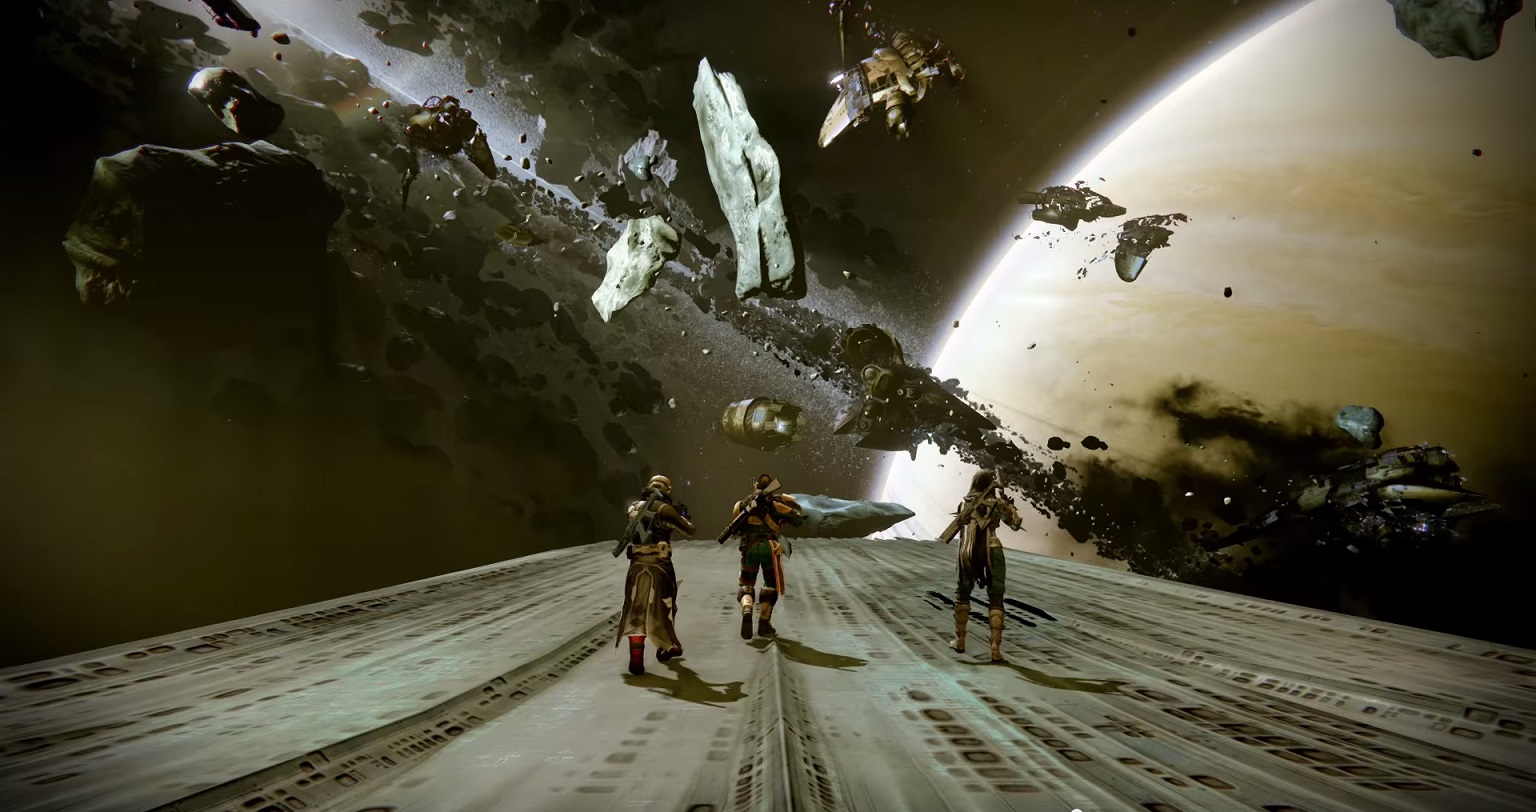 Hüter fliegen in Destiny 2 plötzlich das Grabschiff aus Destiny 1 an